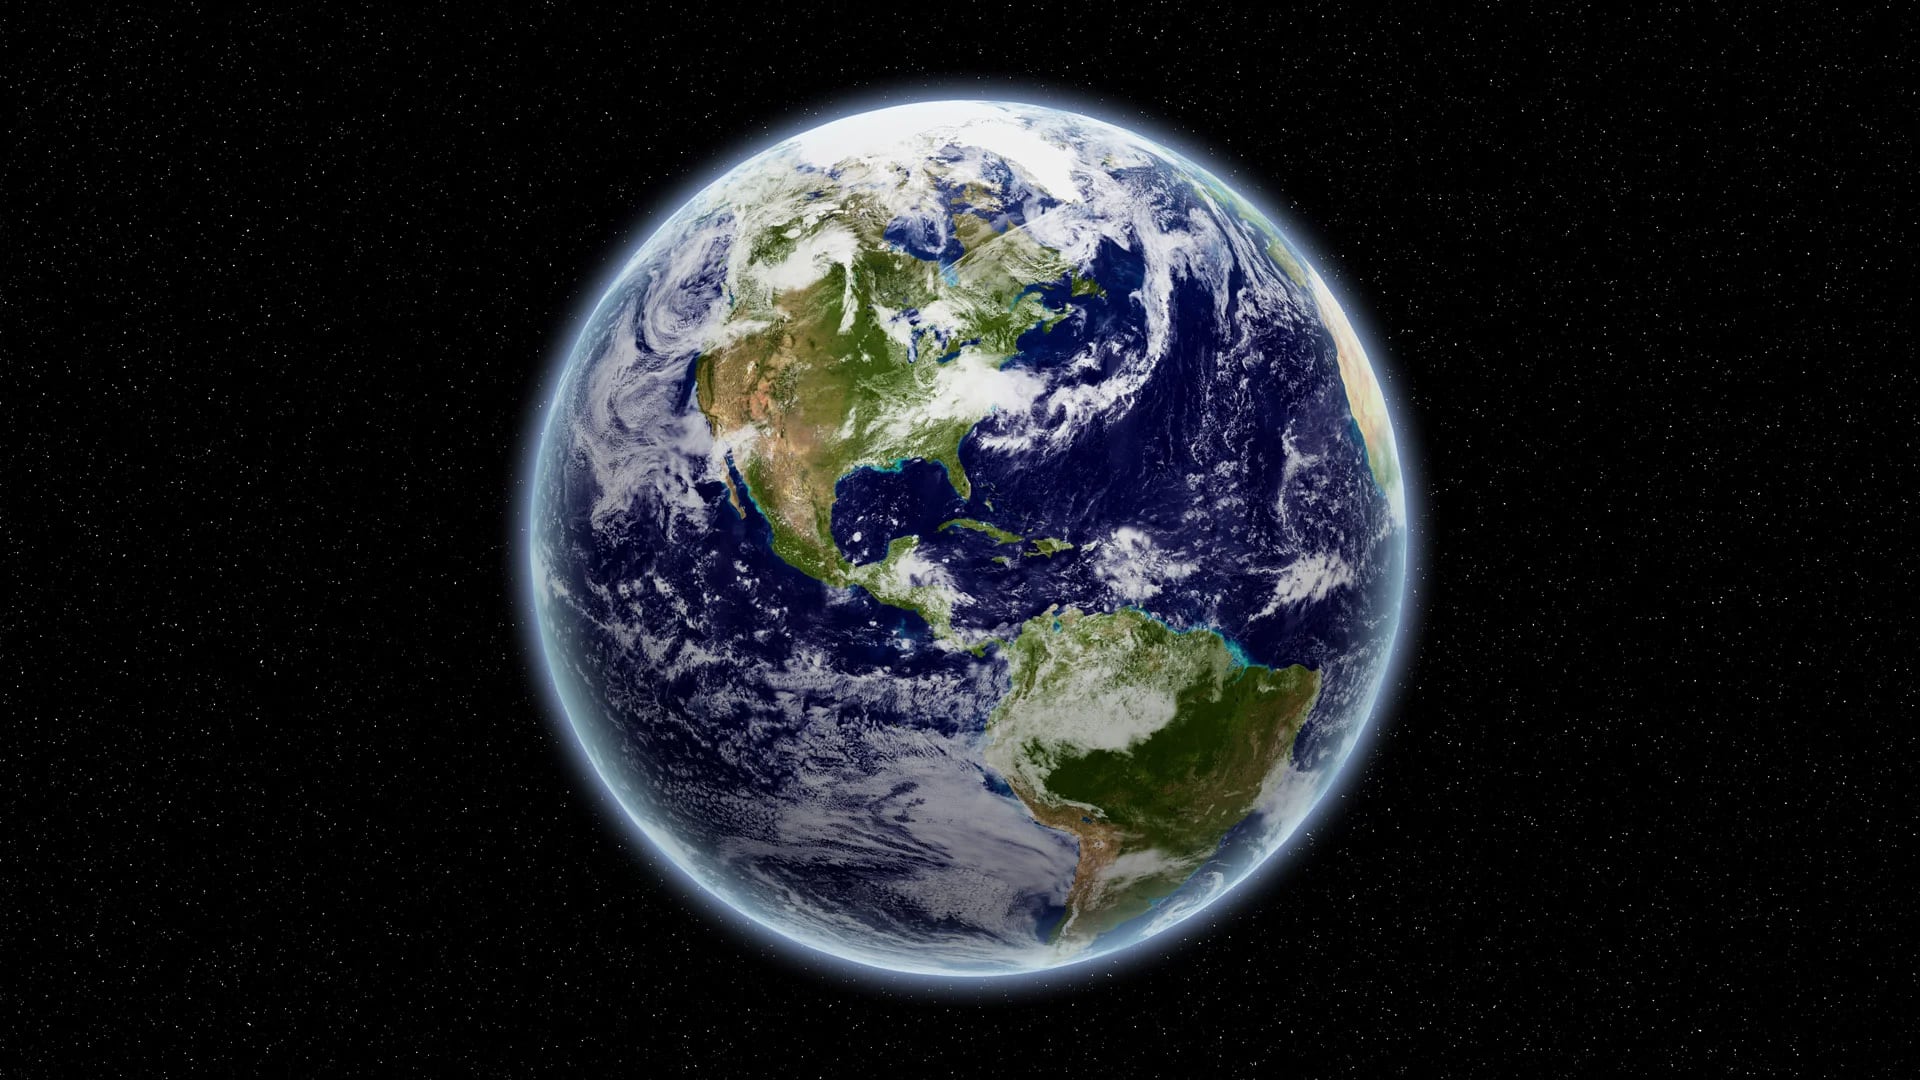 El Planeta Tierra esconde incontables maravillas (Shutterstock)